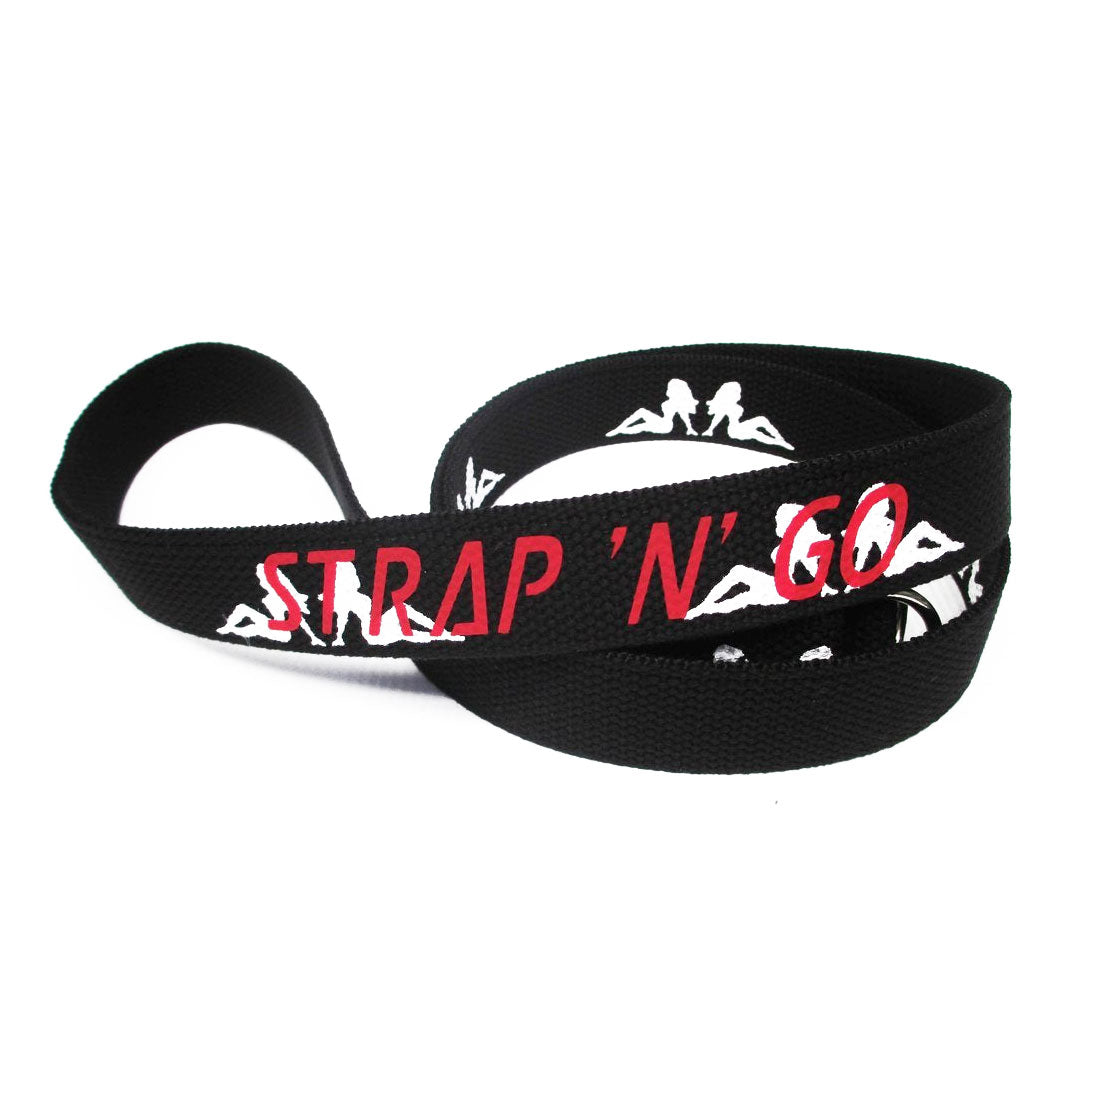 Strap N Go Skate Noose/Leash - Patterns Mud Flap Ladies Roller Skate Accessories